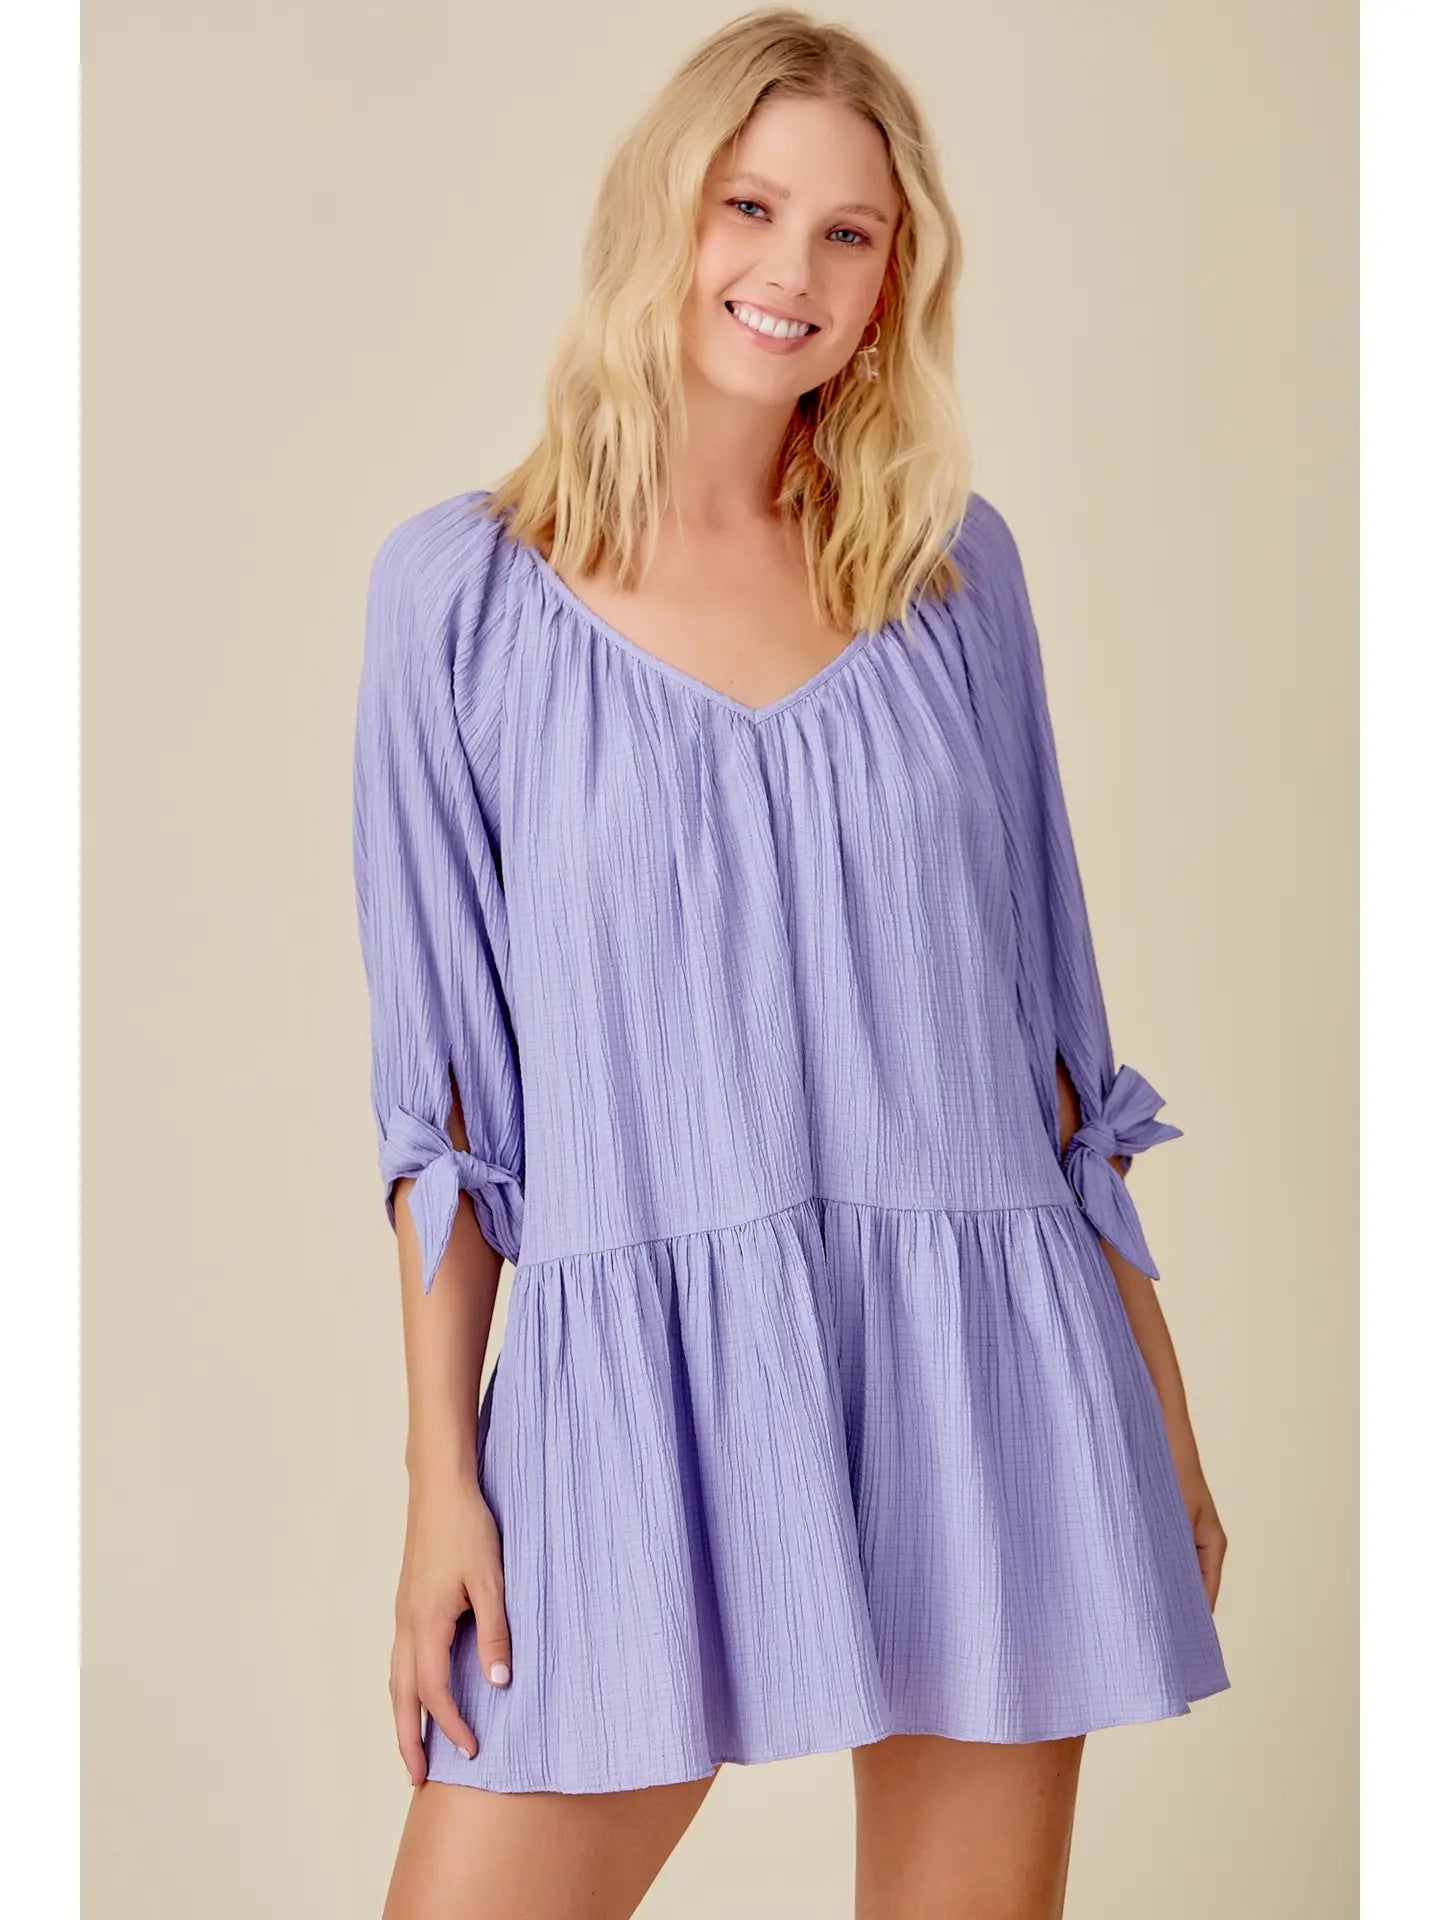 Lavender Crinkle Textured Dress